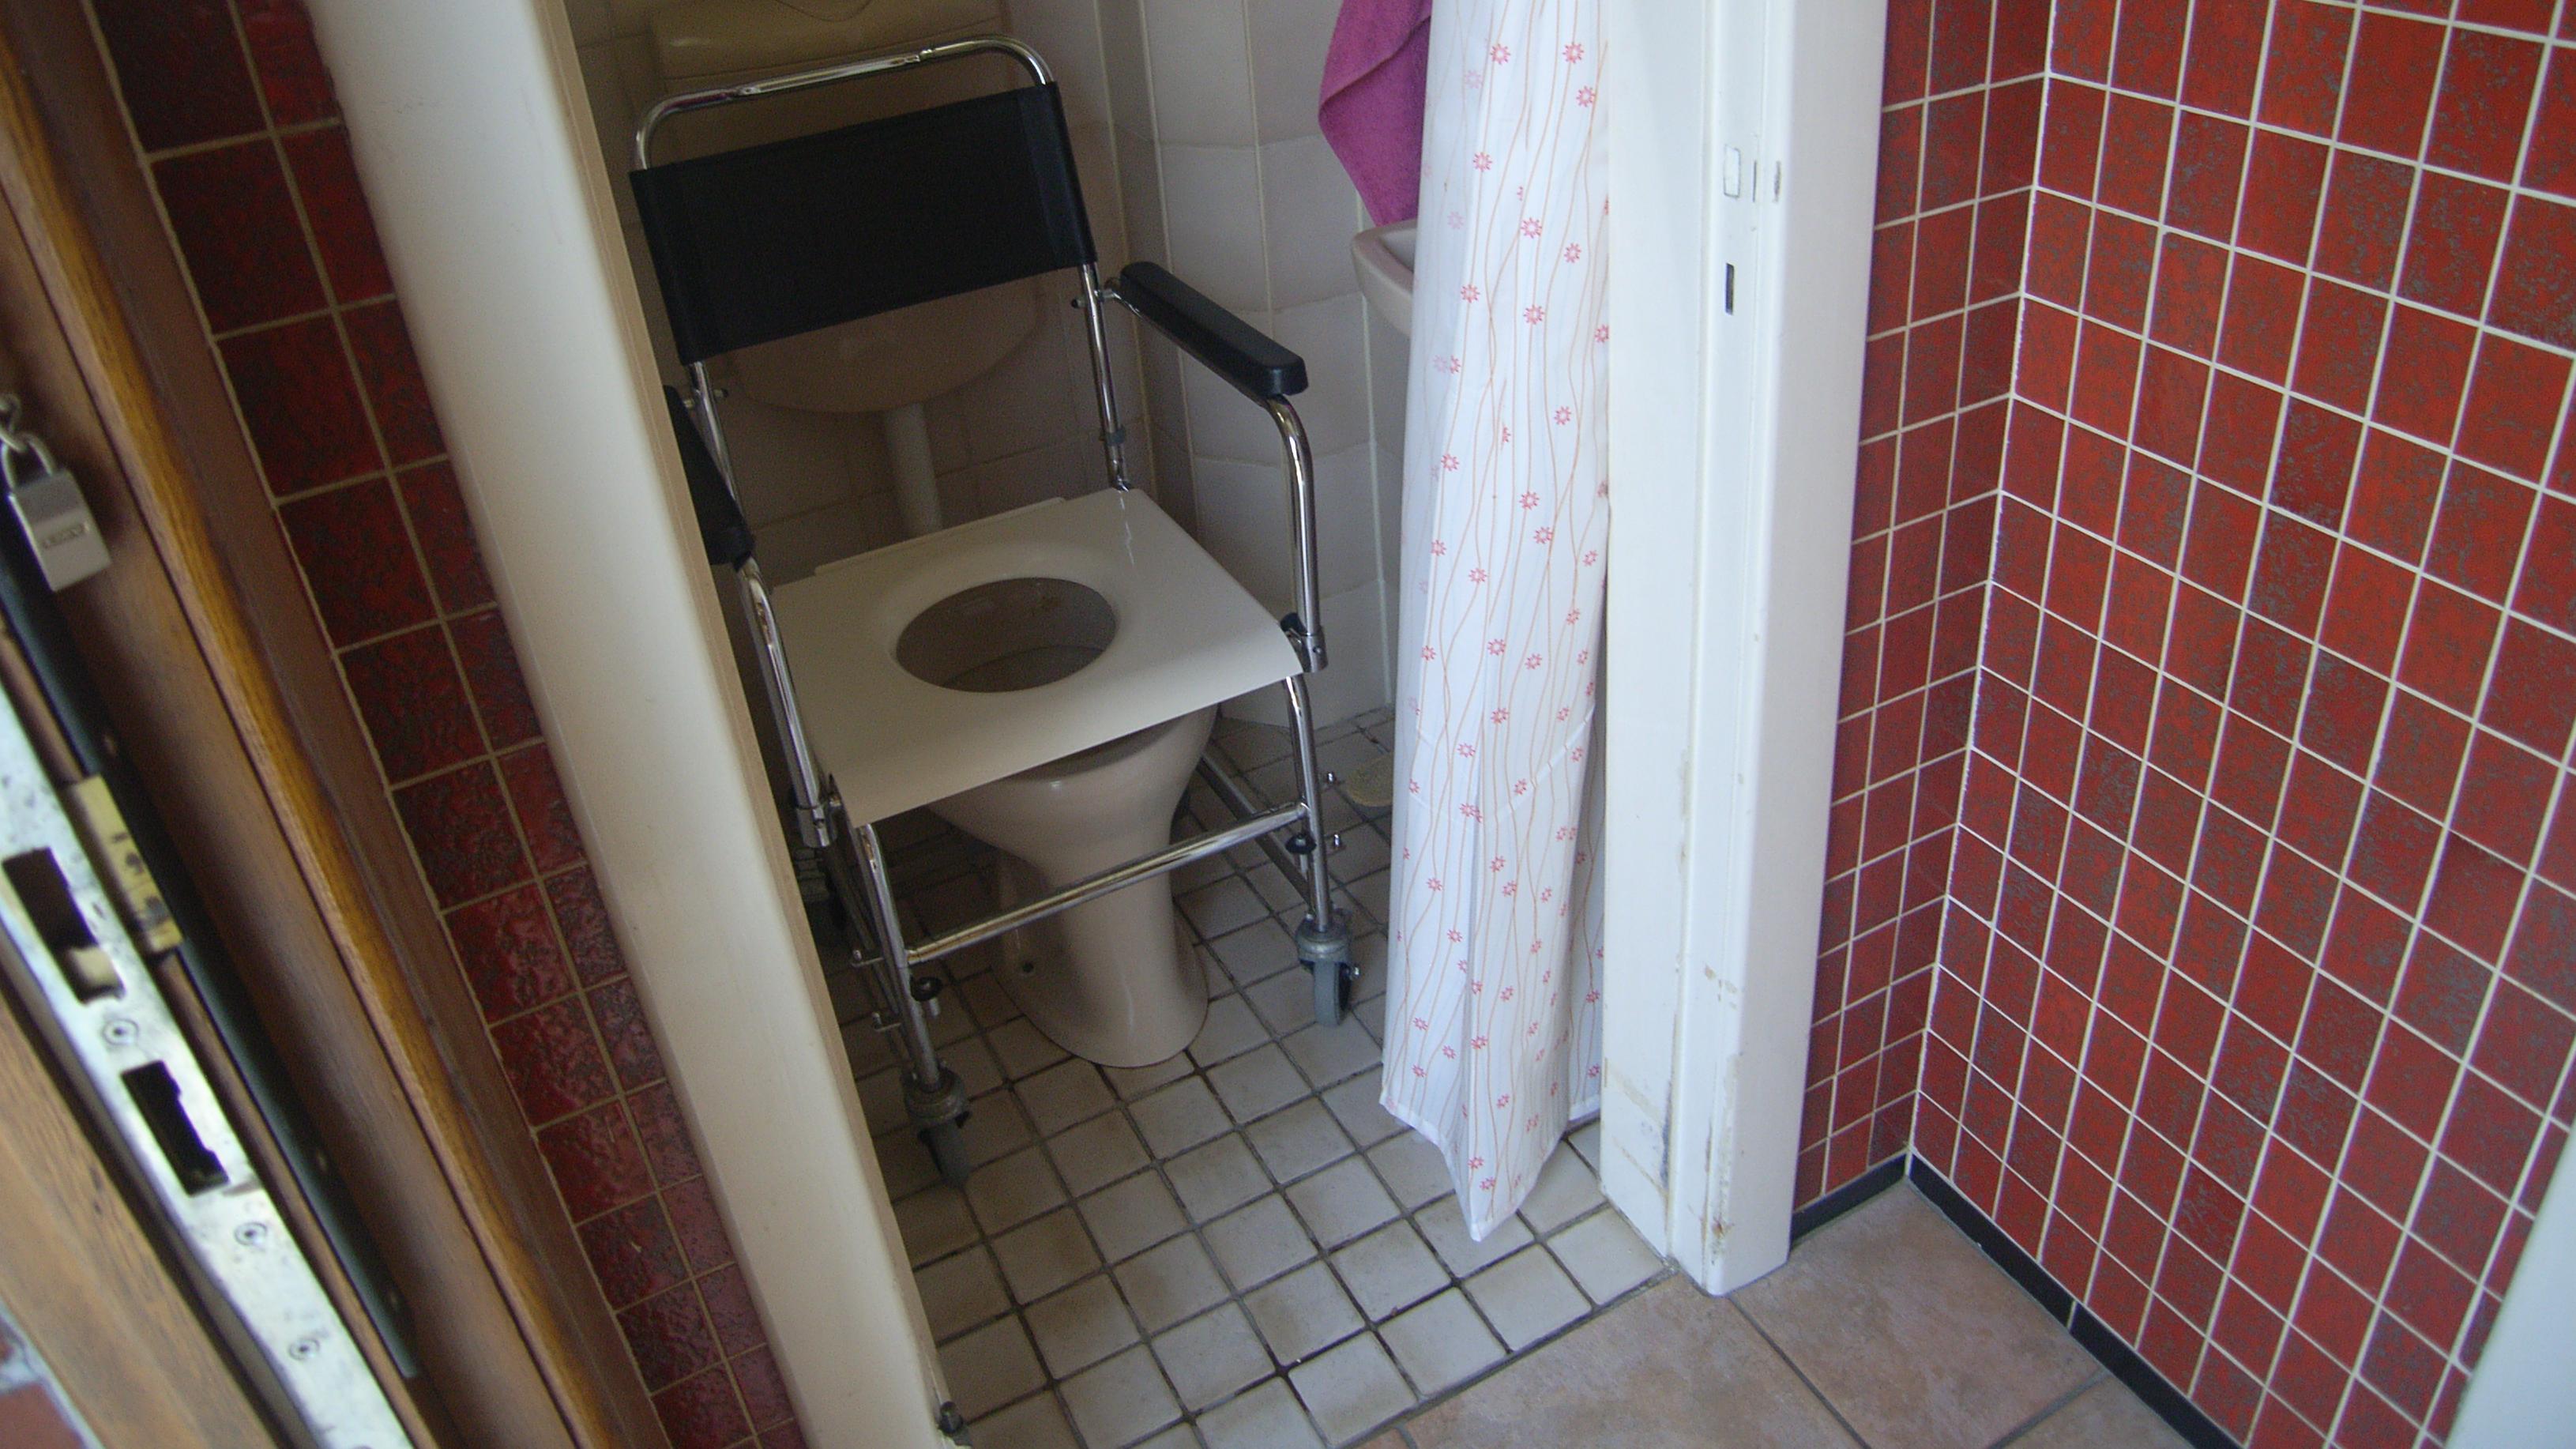 Ein Toilettenrollstuhl über dem WC-Becken geschoben.